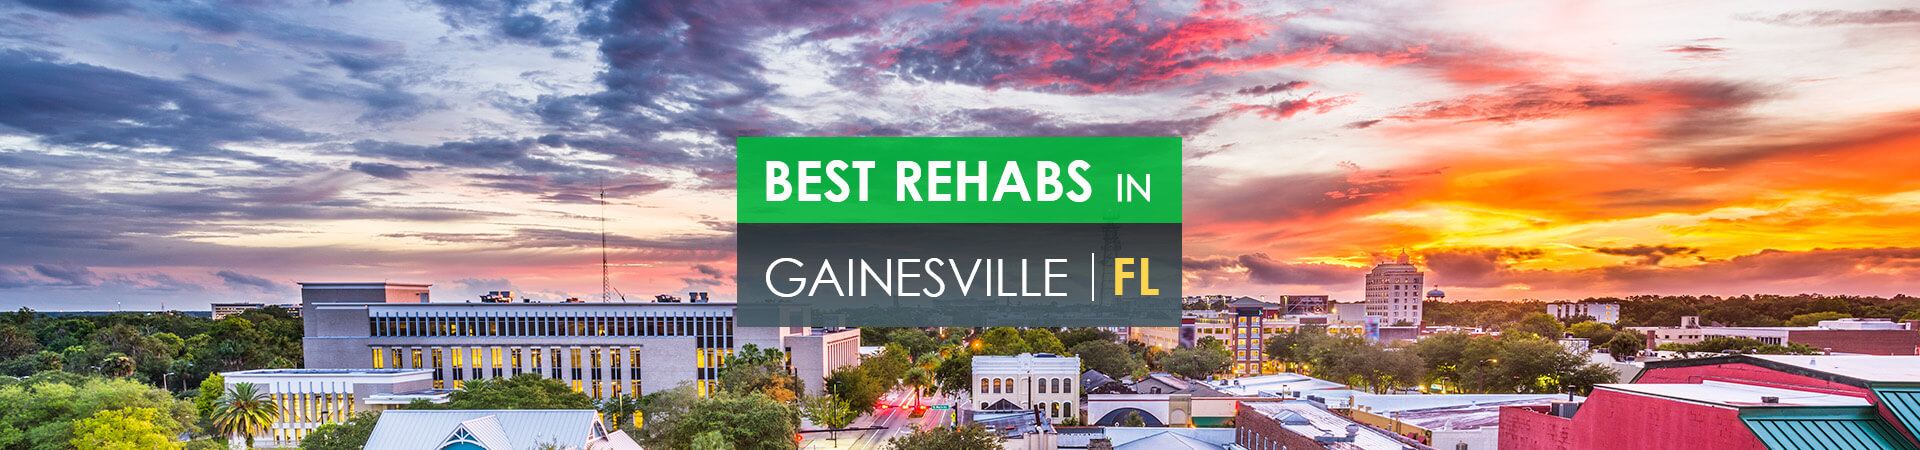 Best rehabs in Gainesville, FL